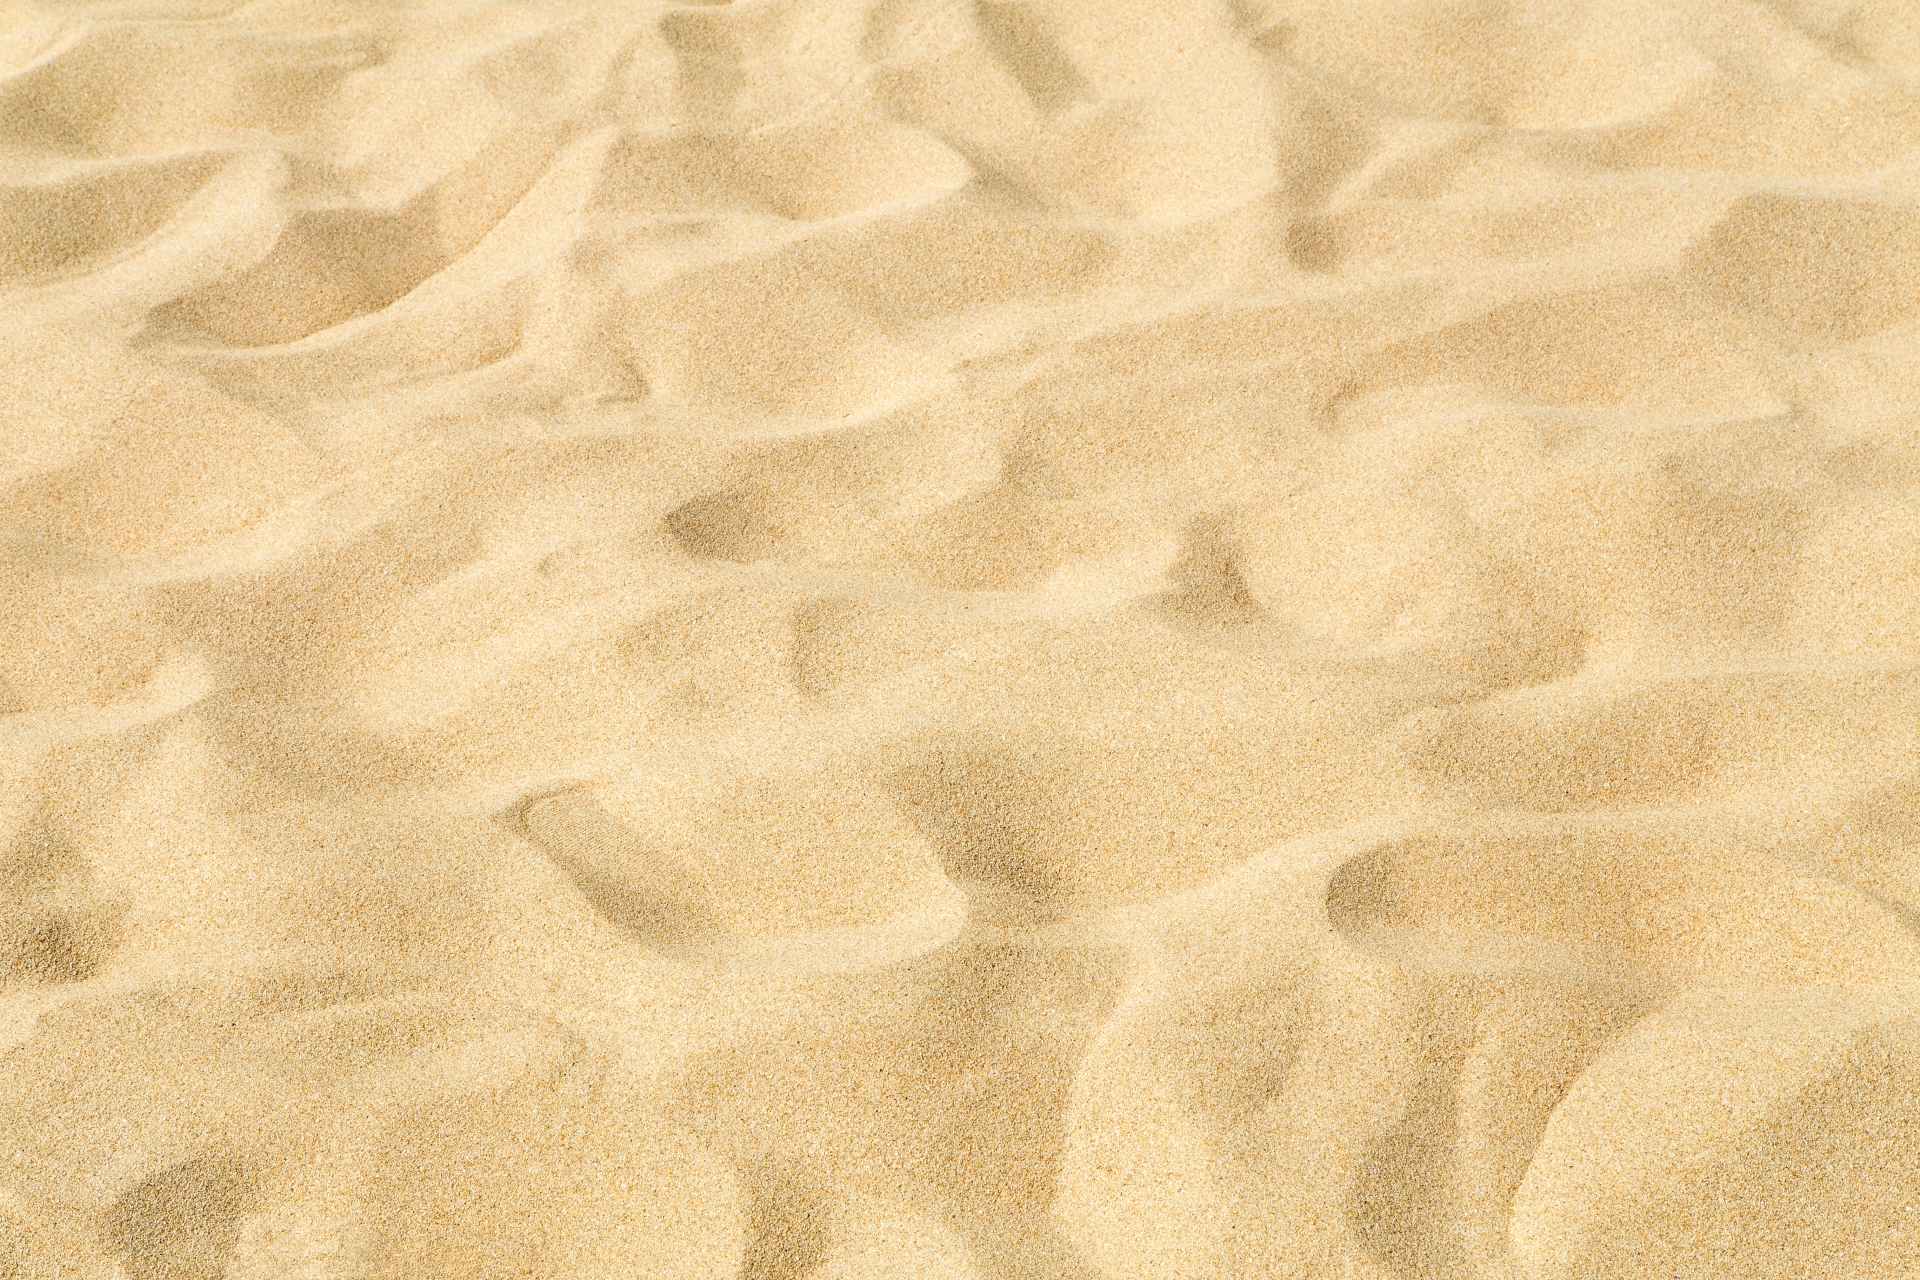 Vaaleaa hienoa hiekkaa